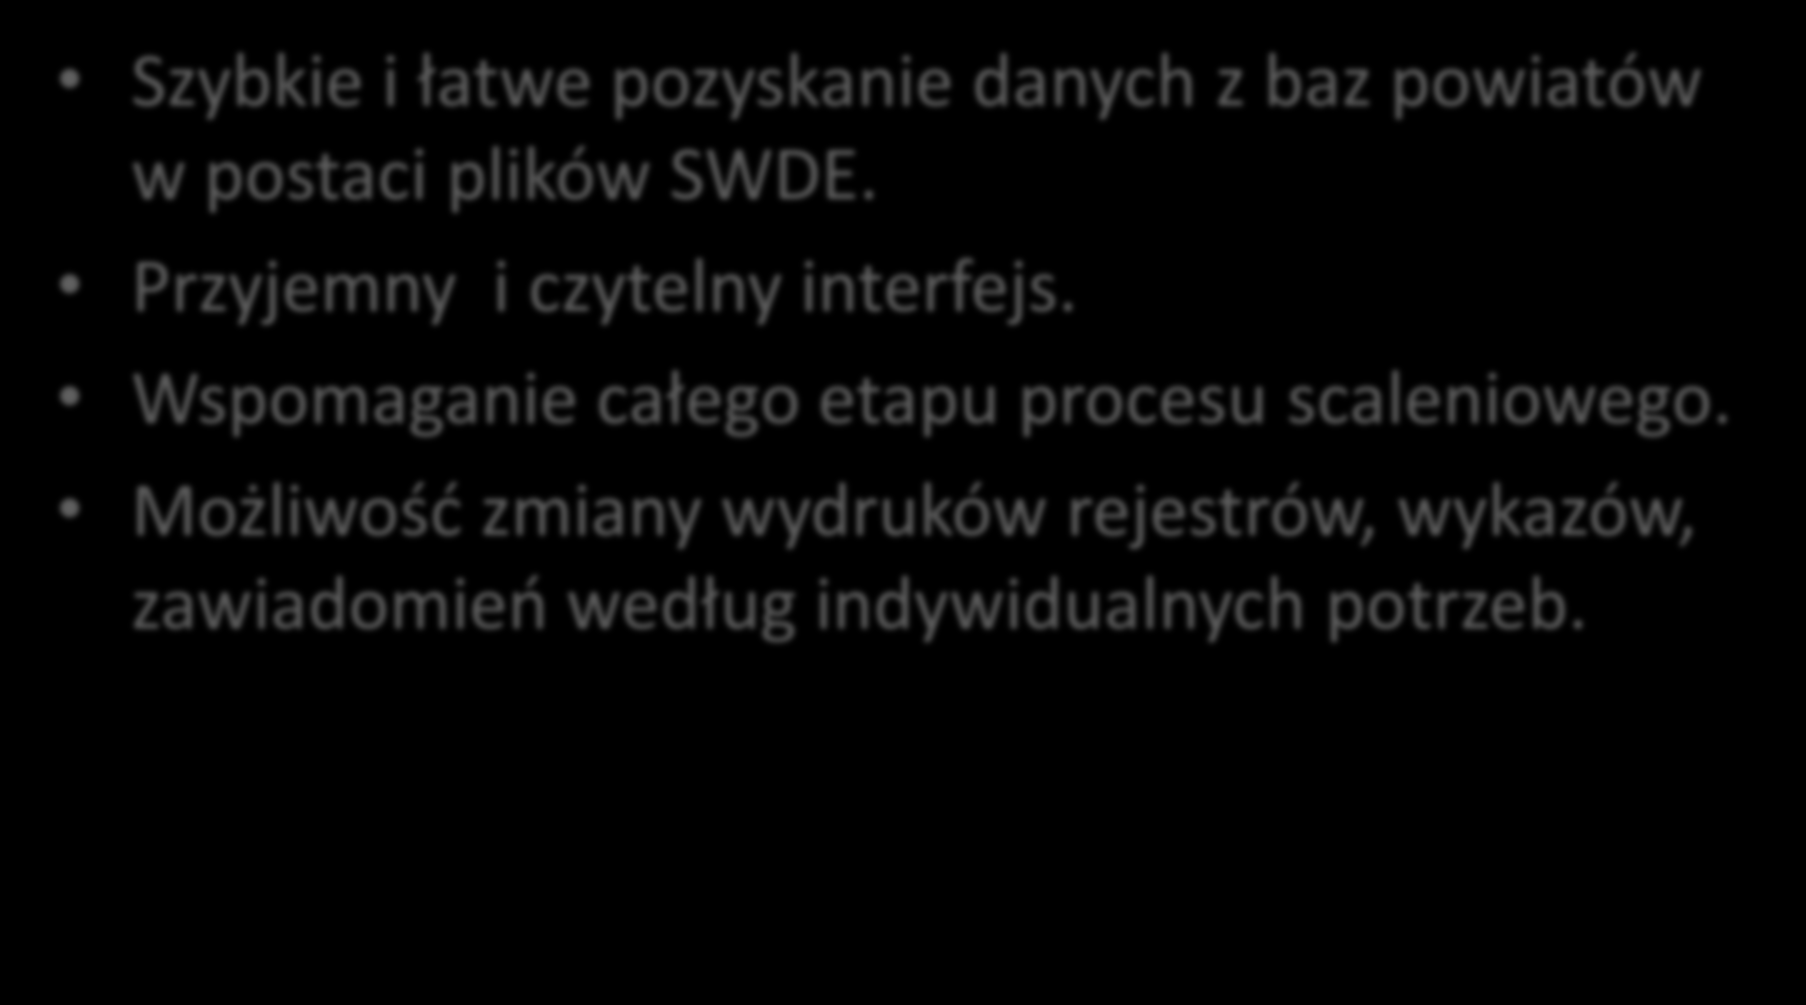 Celem opracowania nowego programu pod nazwą System Scalenia i Wymiany Gruntów (SSiWG) było: Szybkie i łatwe pozyskanie danych z baz powiatów w postaci plików SWDE.